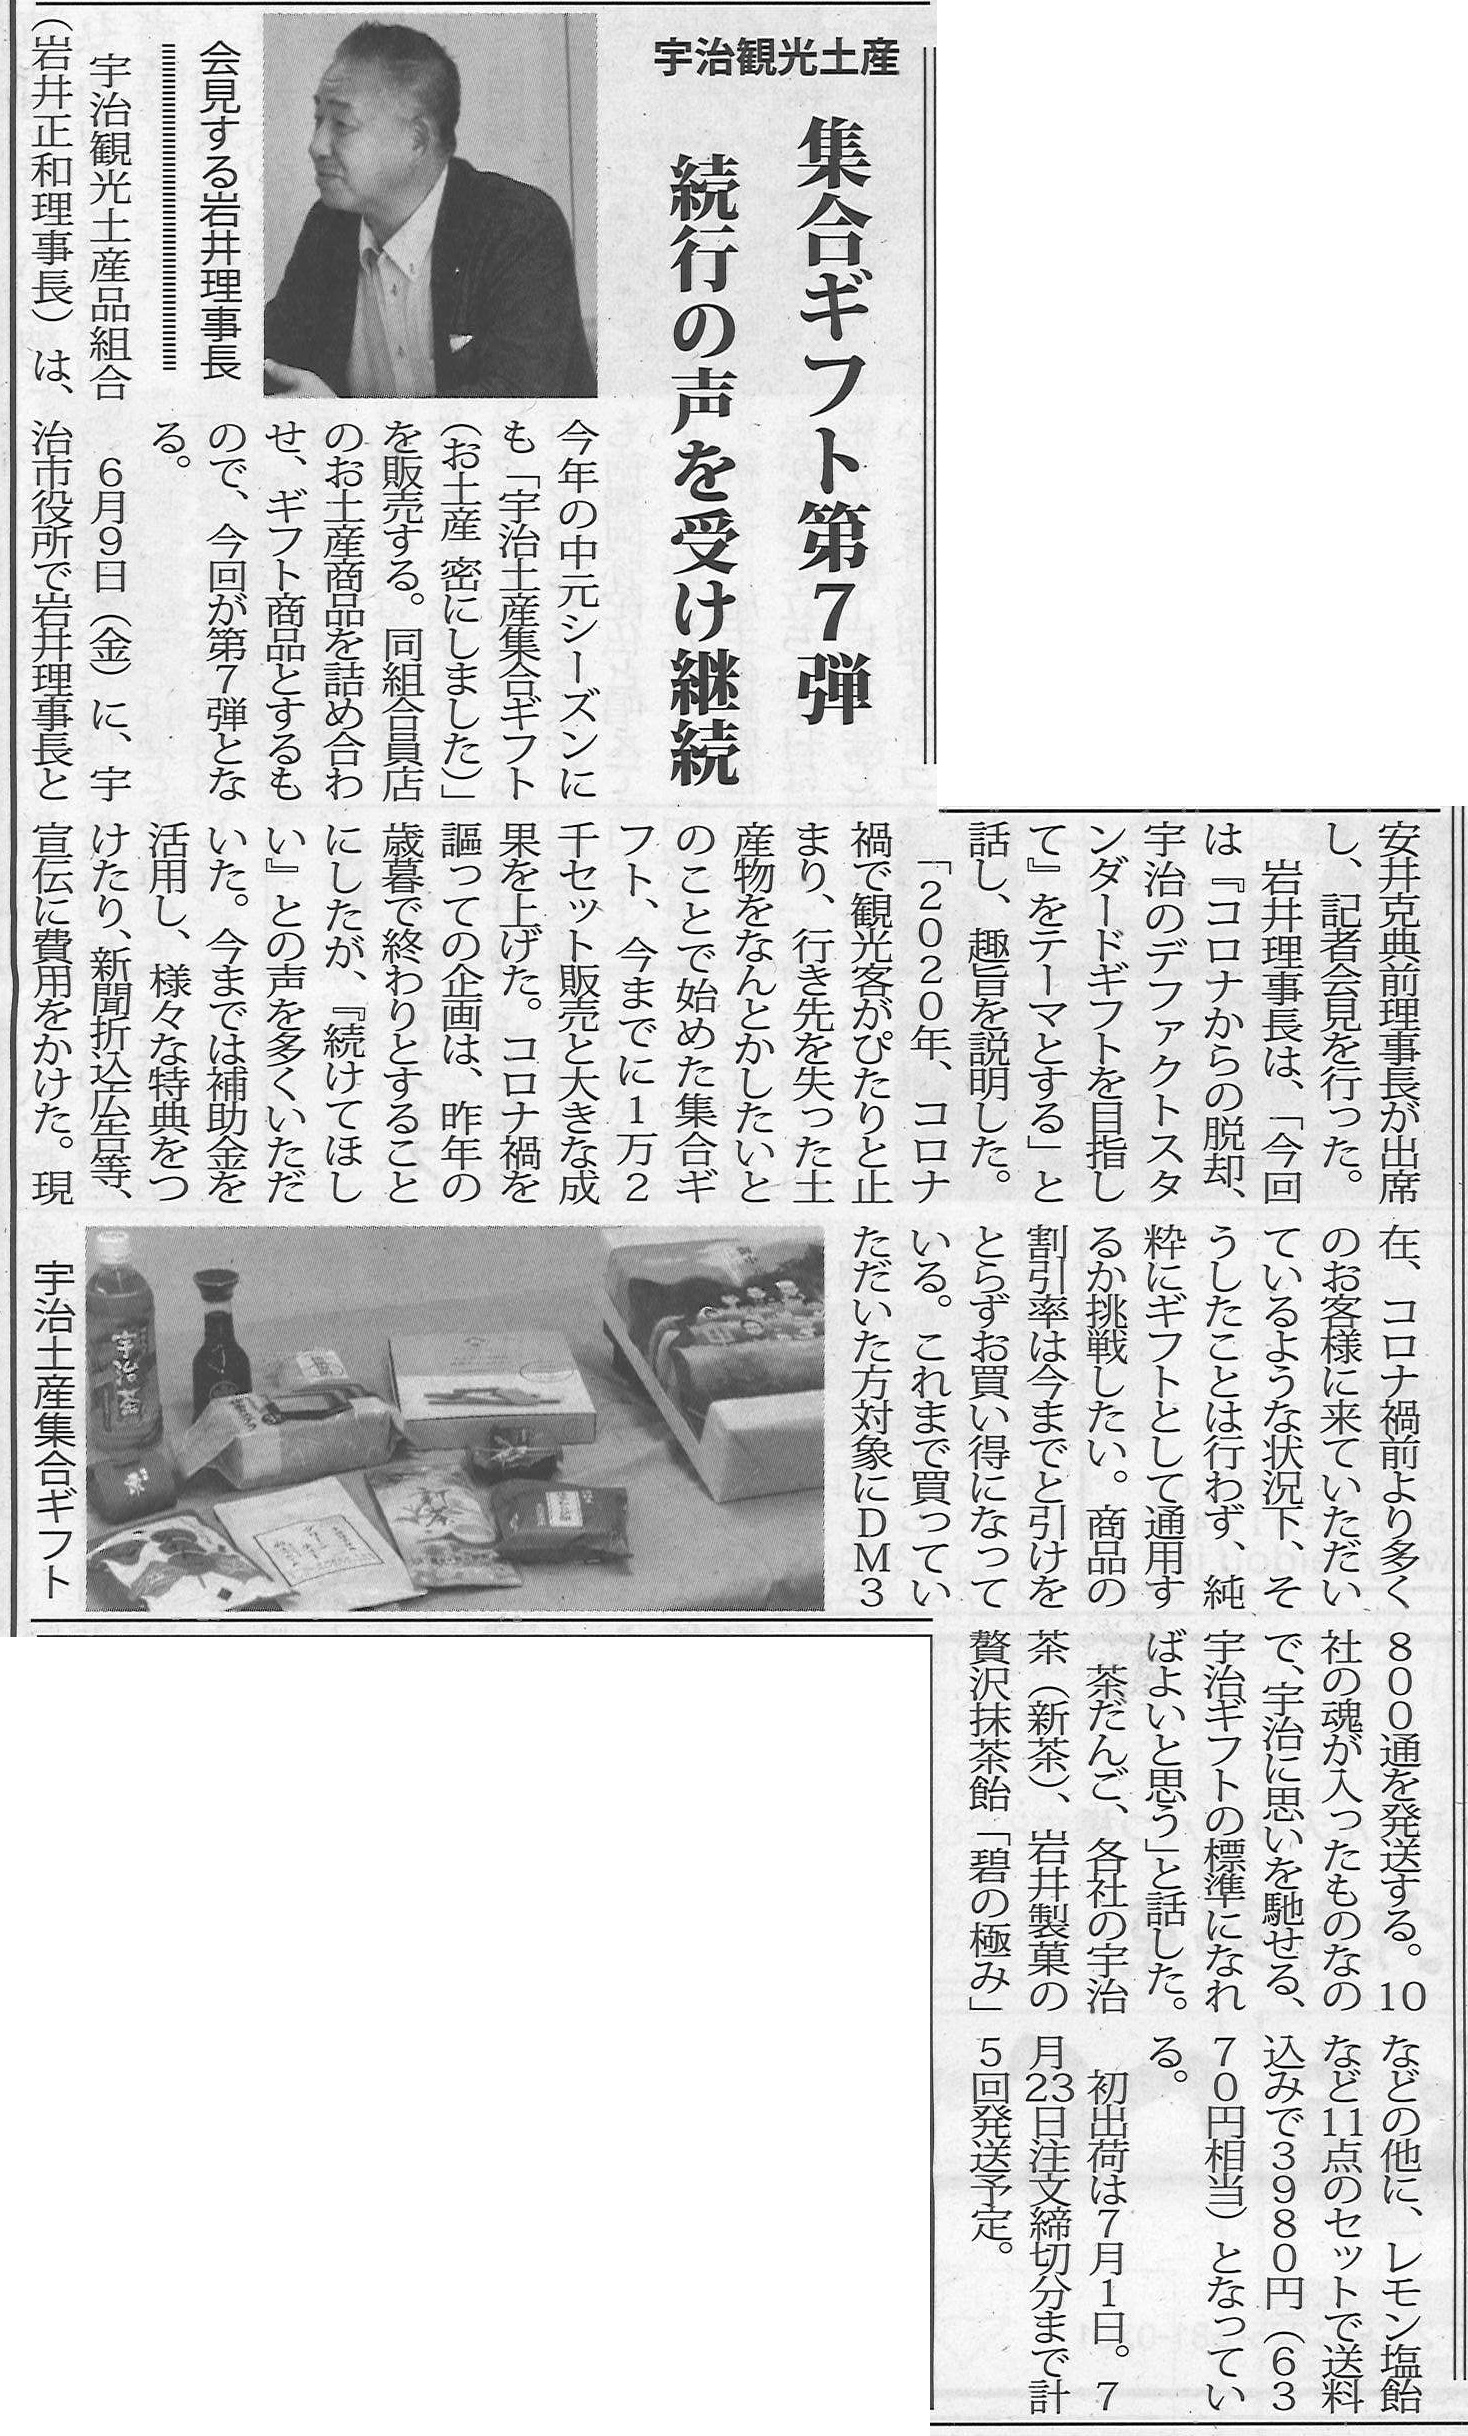 6月22日 菓業食品新聞にて宇治観光土産品組合による第7回目のお中元ギフトが紹介